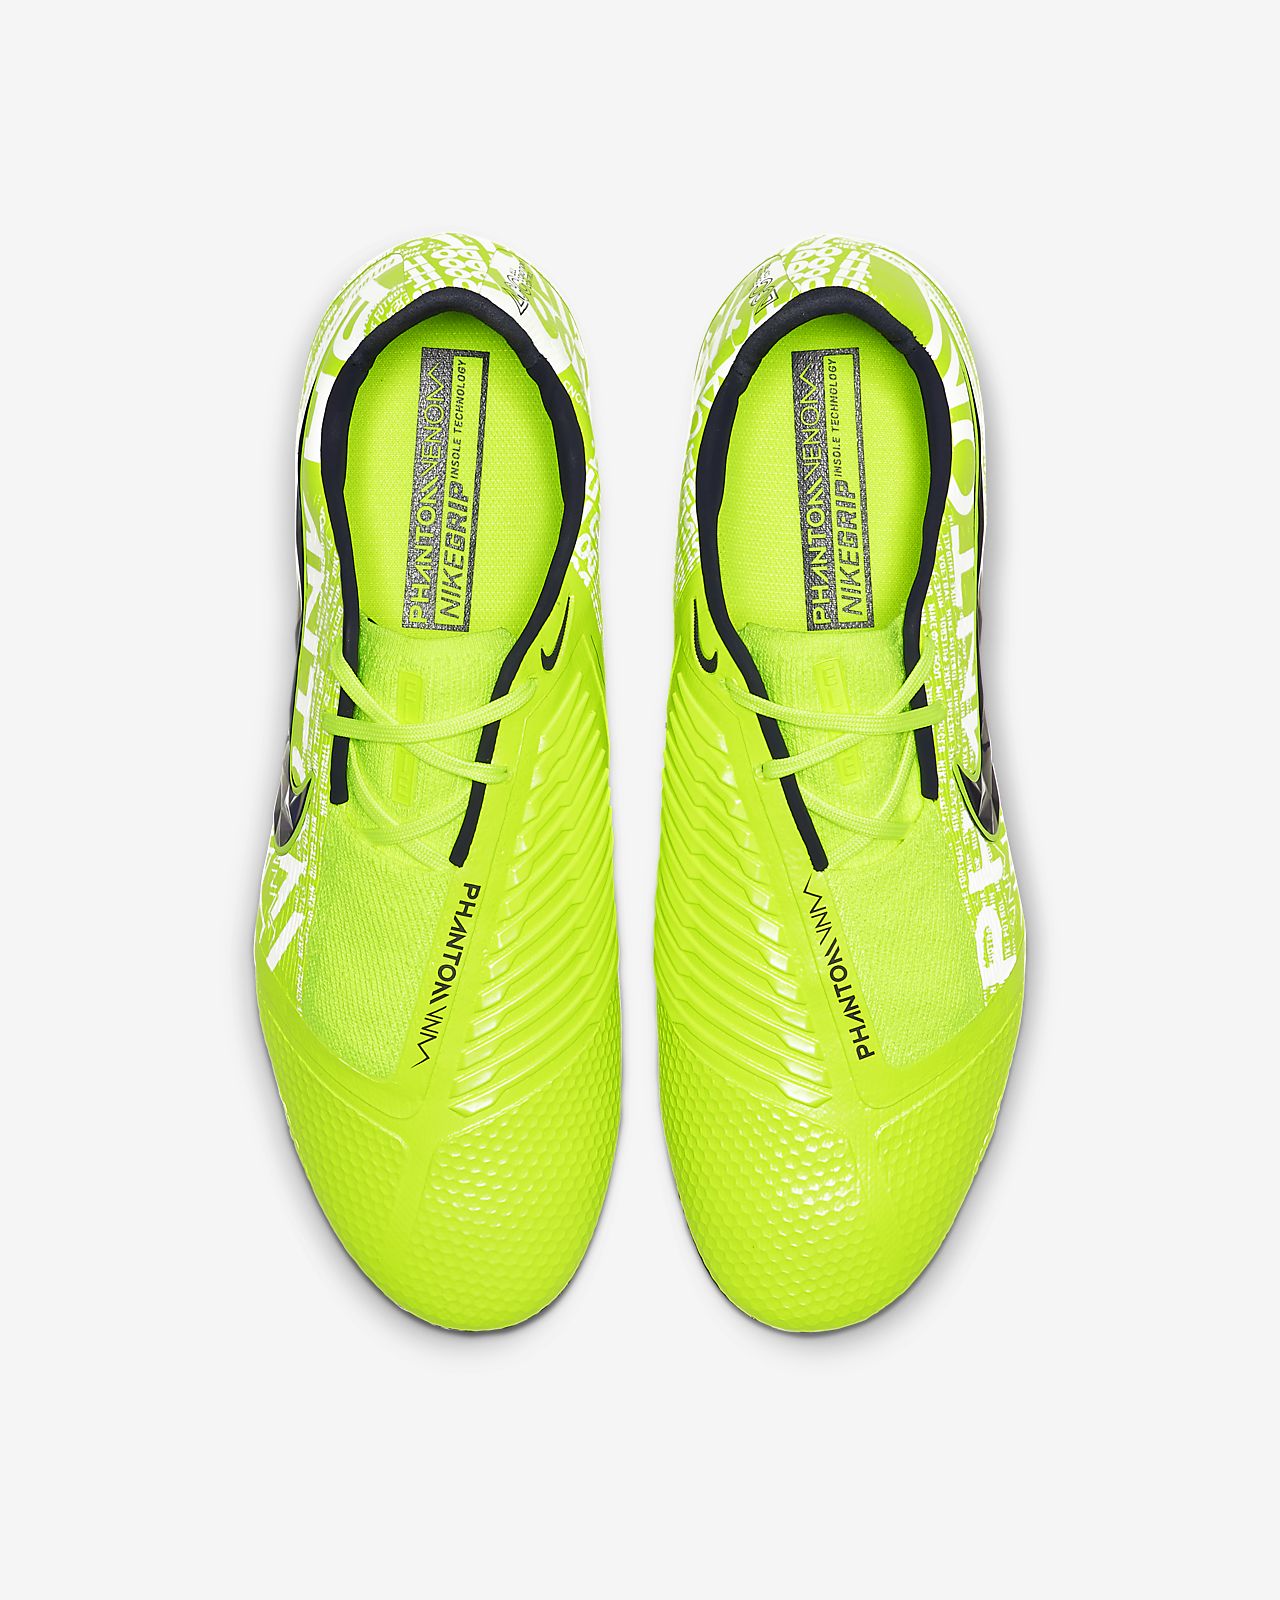 Nike Hypervenom PhantomVSN Elite Dynamic Fit . soccerloco